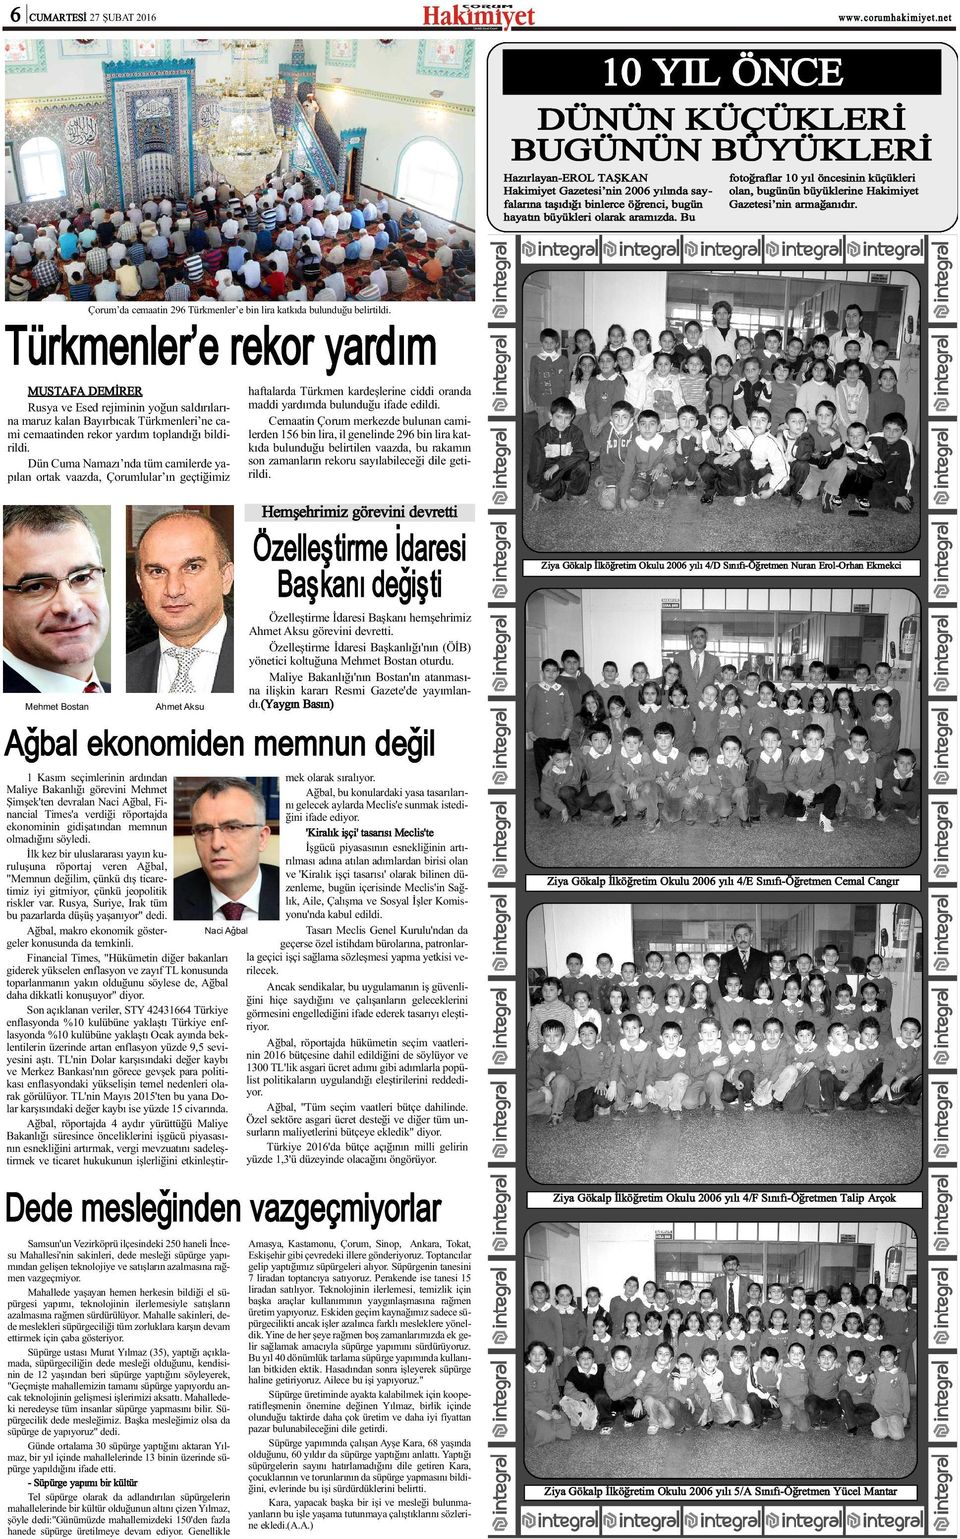 Türkmenler e rekor yardým Çorum da cemaatin 296 Türkmenler e bin lira katkýda bulunduðu belirtildi.